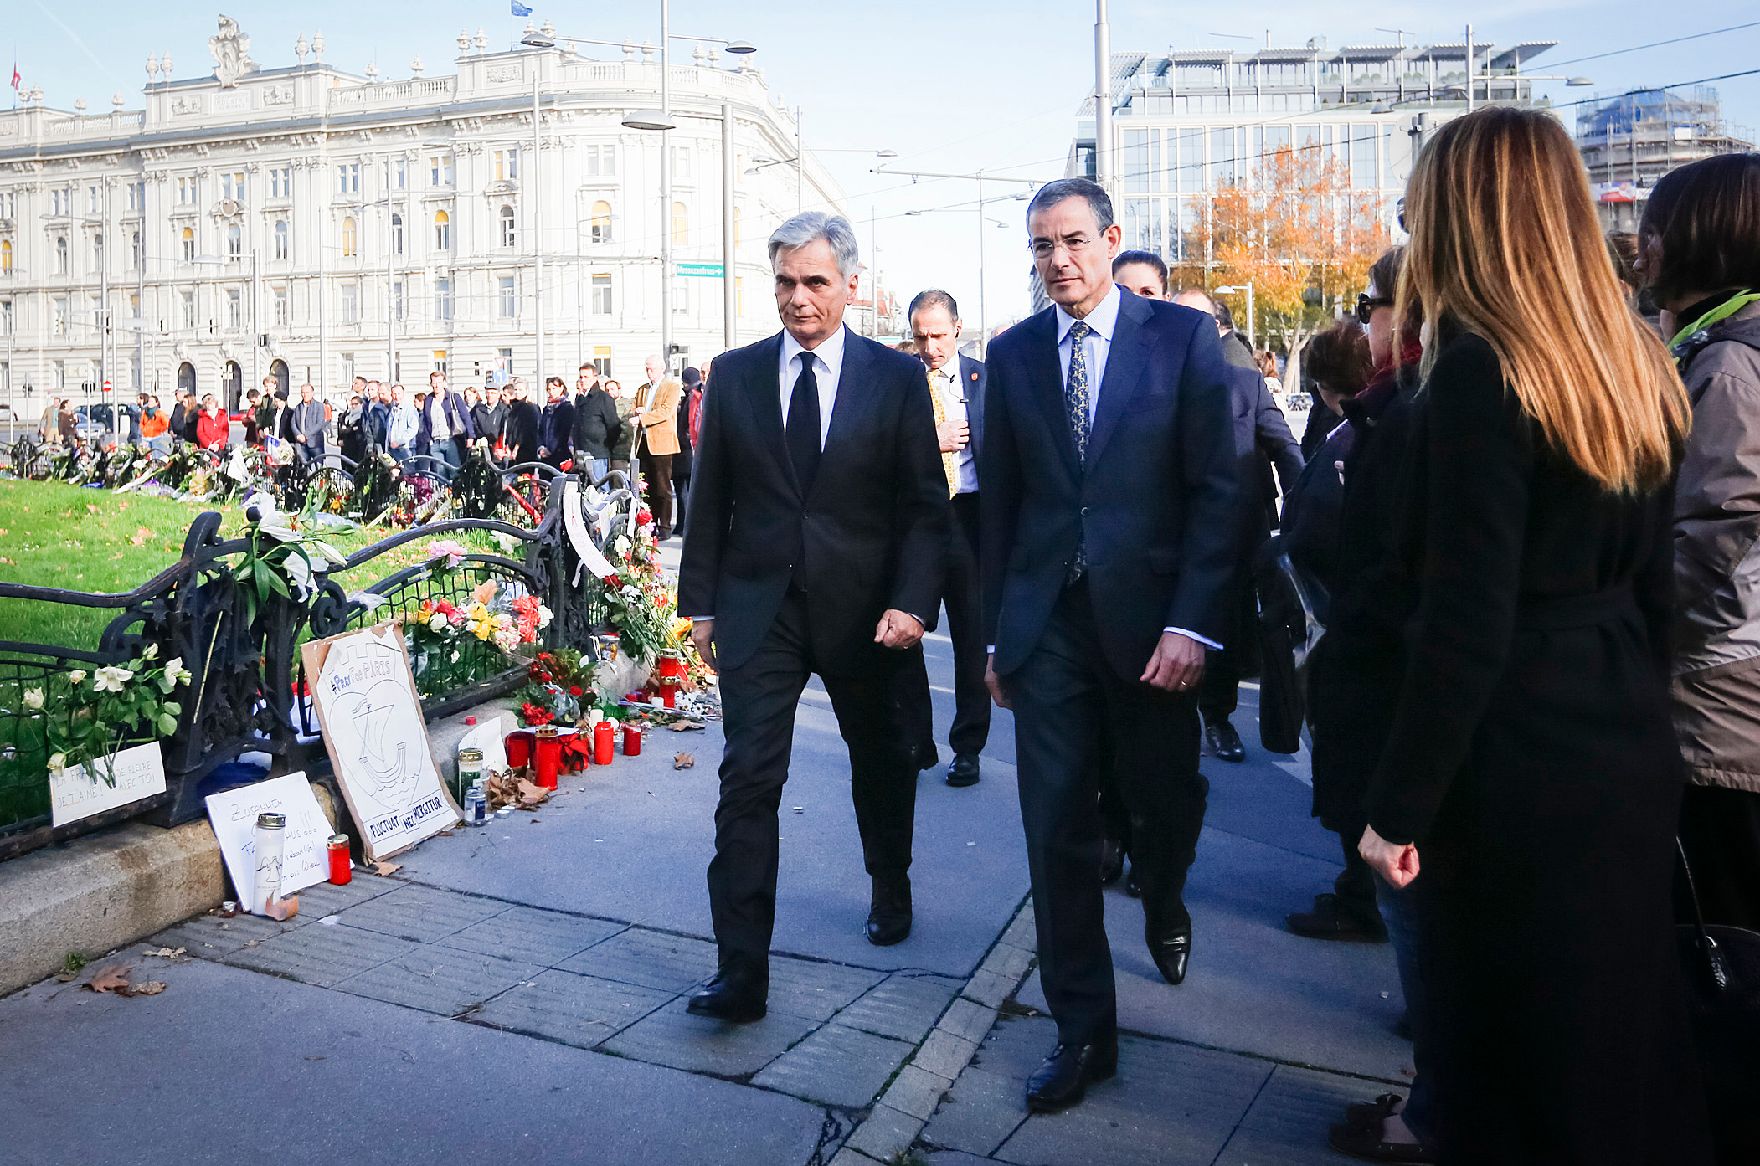 Am 16. November 2015 nahm Bundeskanzler Werner Faymann (l.) gemeinsam mit dem französischen Botschafter Pascal Teixeira da Silva (r.) vor der französischen Botschaft in Wien an der Veranstaltung zum Gedenken an die Opfer der Anschläge in Paris teil.